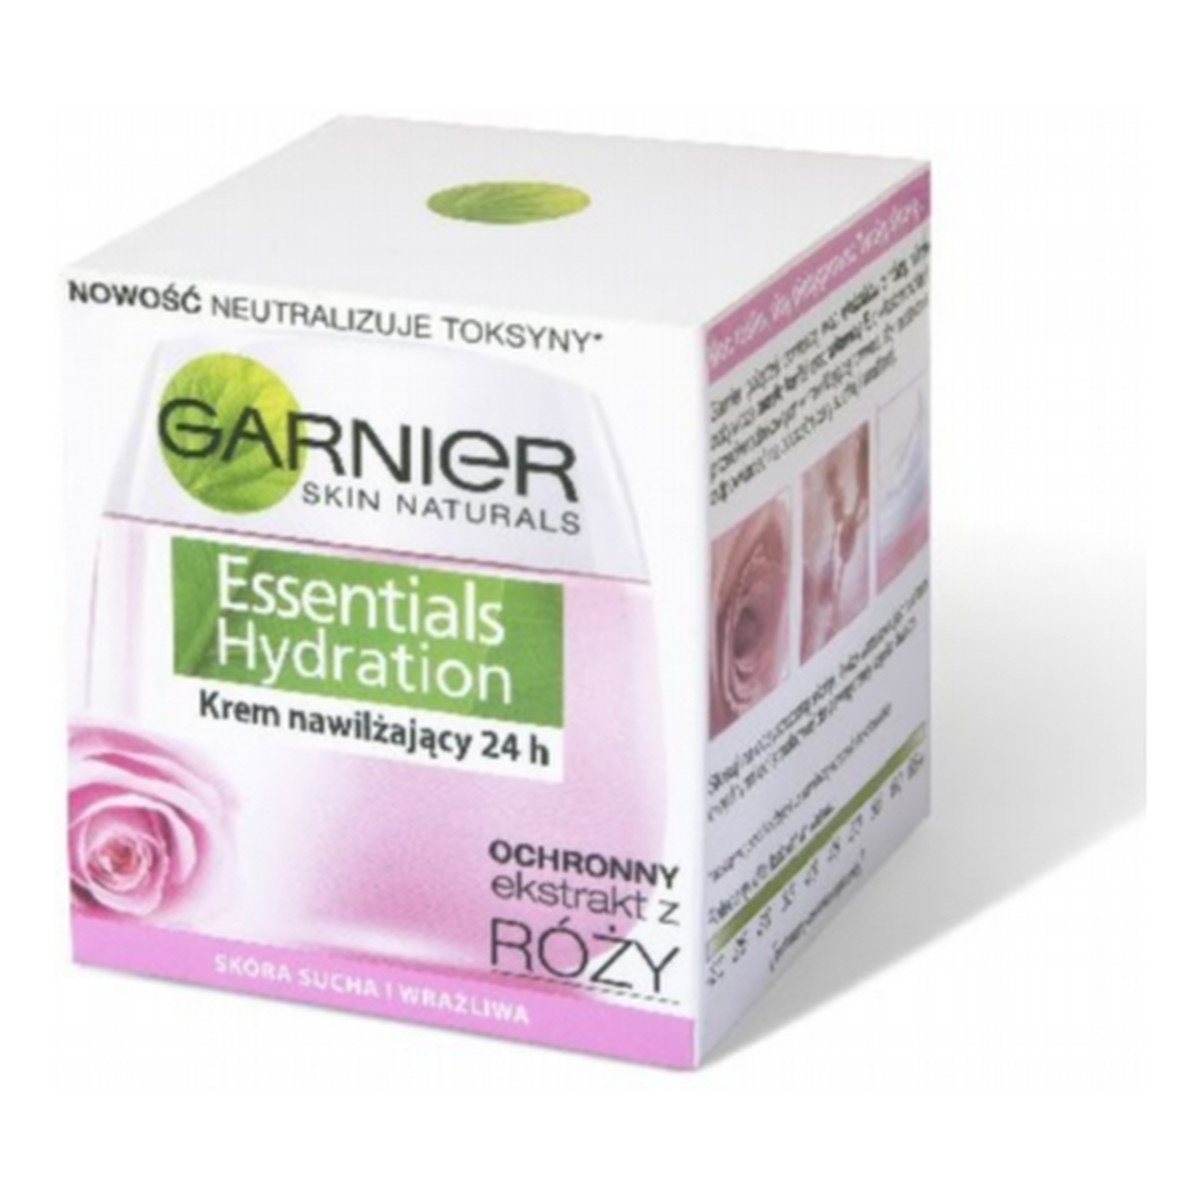 Garnier Essentials Hydration Krem Nawilżający 24h 50ml